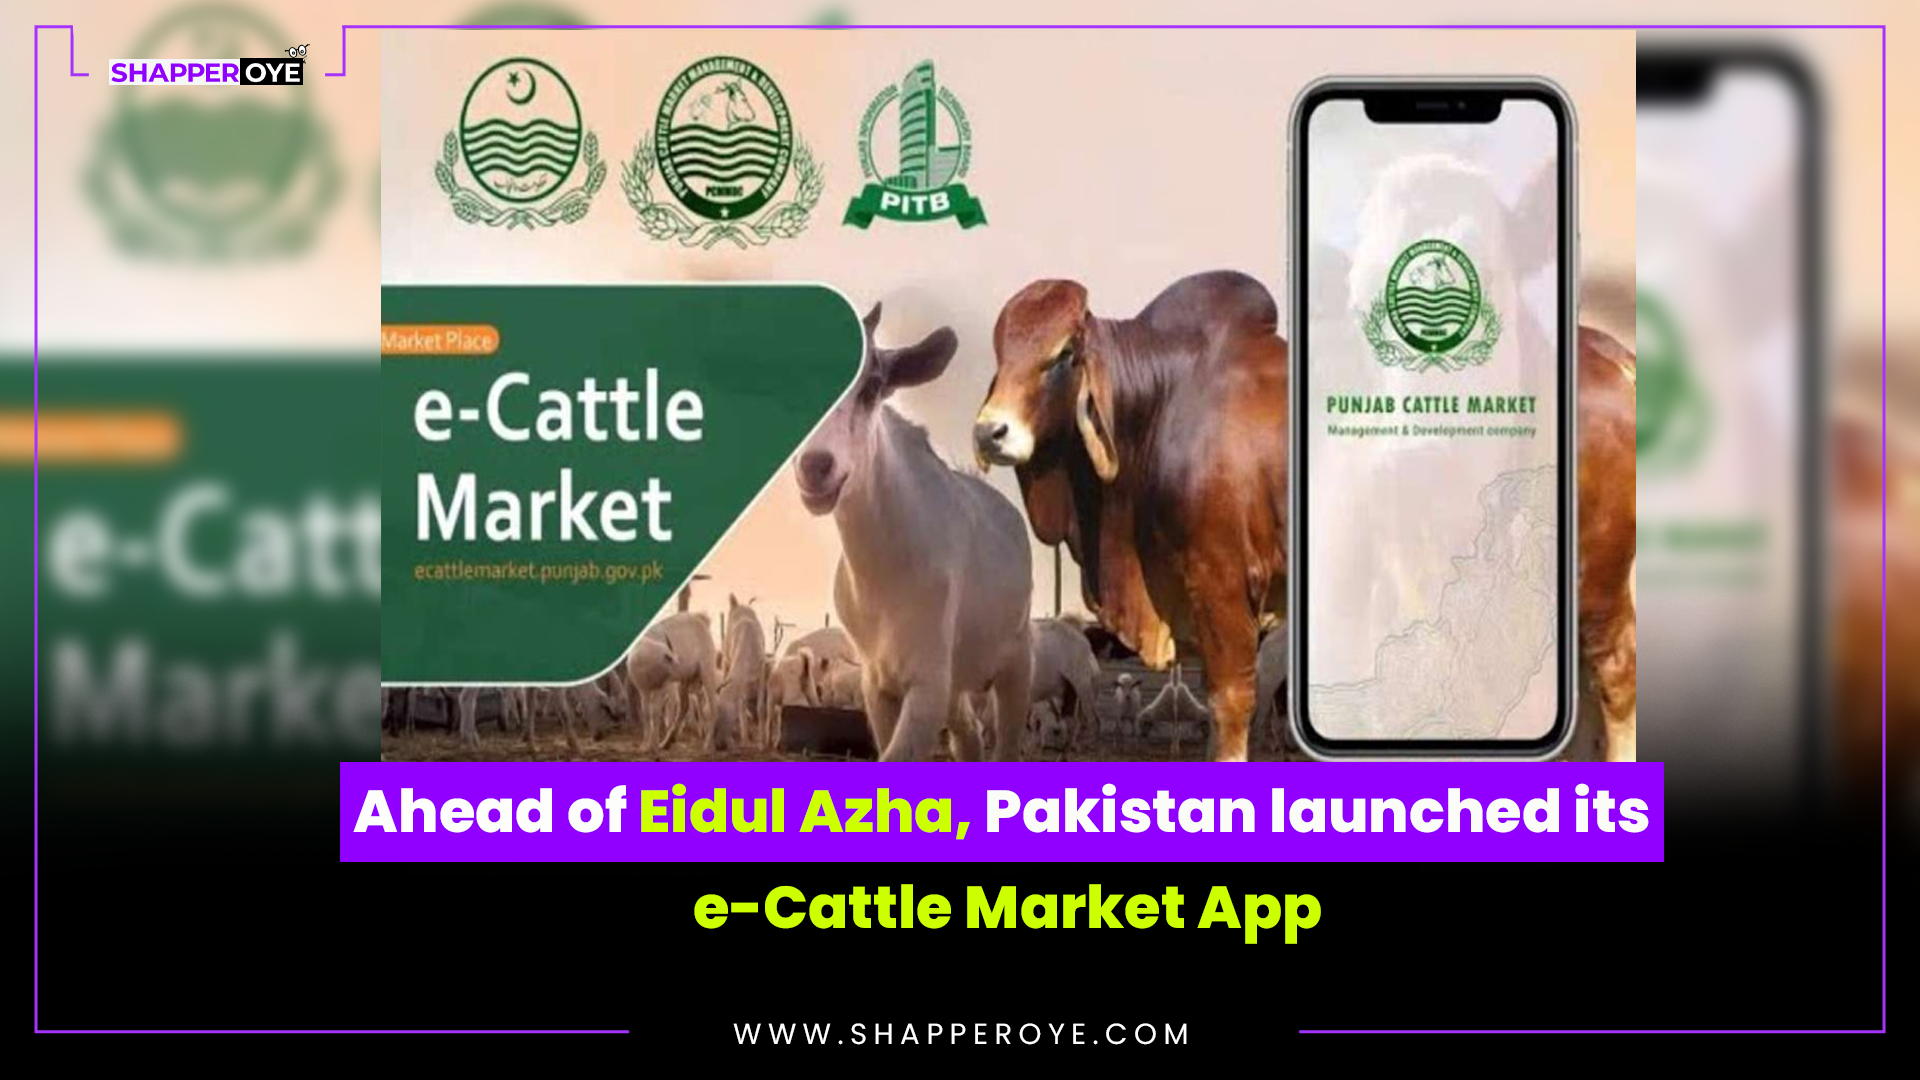 Eidul Azha, Pakistan launched its e-Cattle Market App